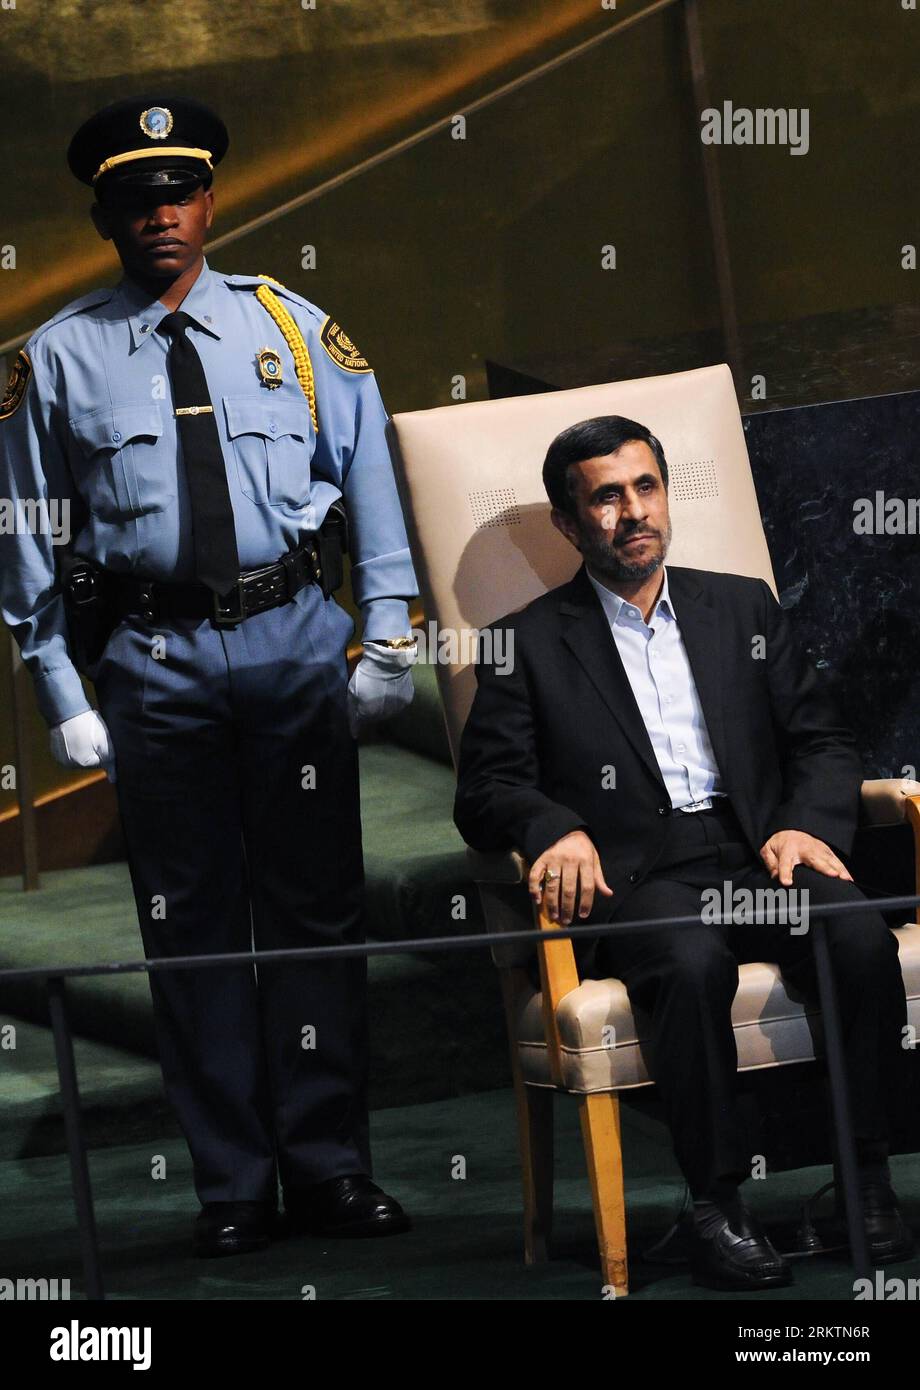 Bildnummer : 58518925 Datum : 26.09.2012 Copyright : imago/Xinhua (120926) -- NEW YORK, 26 septembre 2012 (Xinhua) -- le président iranien Mahmoud Ahmadinejad(R) s'apprête à prendre la parole au débat général de la 67e session de l'Assemblée générale des Nations Unies au siège de l'ONU à New York, aux États-Unis, le 26 septembre 2012. Ahmadinejad a accusé mercredi certaines puissances hégémoniques d’intimider son pays, citant des menaces militaires d’Israël. (Xinhua/Shen Hong) un-NEW YORK-ASSEMBLÉE GÉNÉRALE-DÉBAT GÉNÉRAL-IRAN PUBLICATIONxNOTxINxCHN People Politik UNO Generalversammlung x0x xmb 2012 hoch premiumd 585189 Banque D'Images